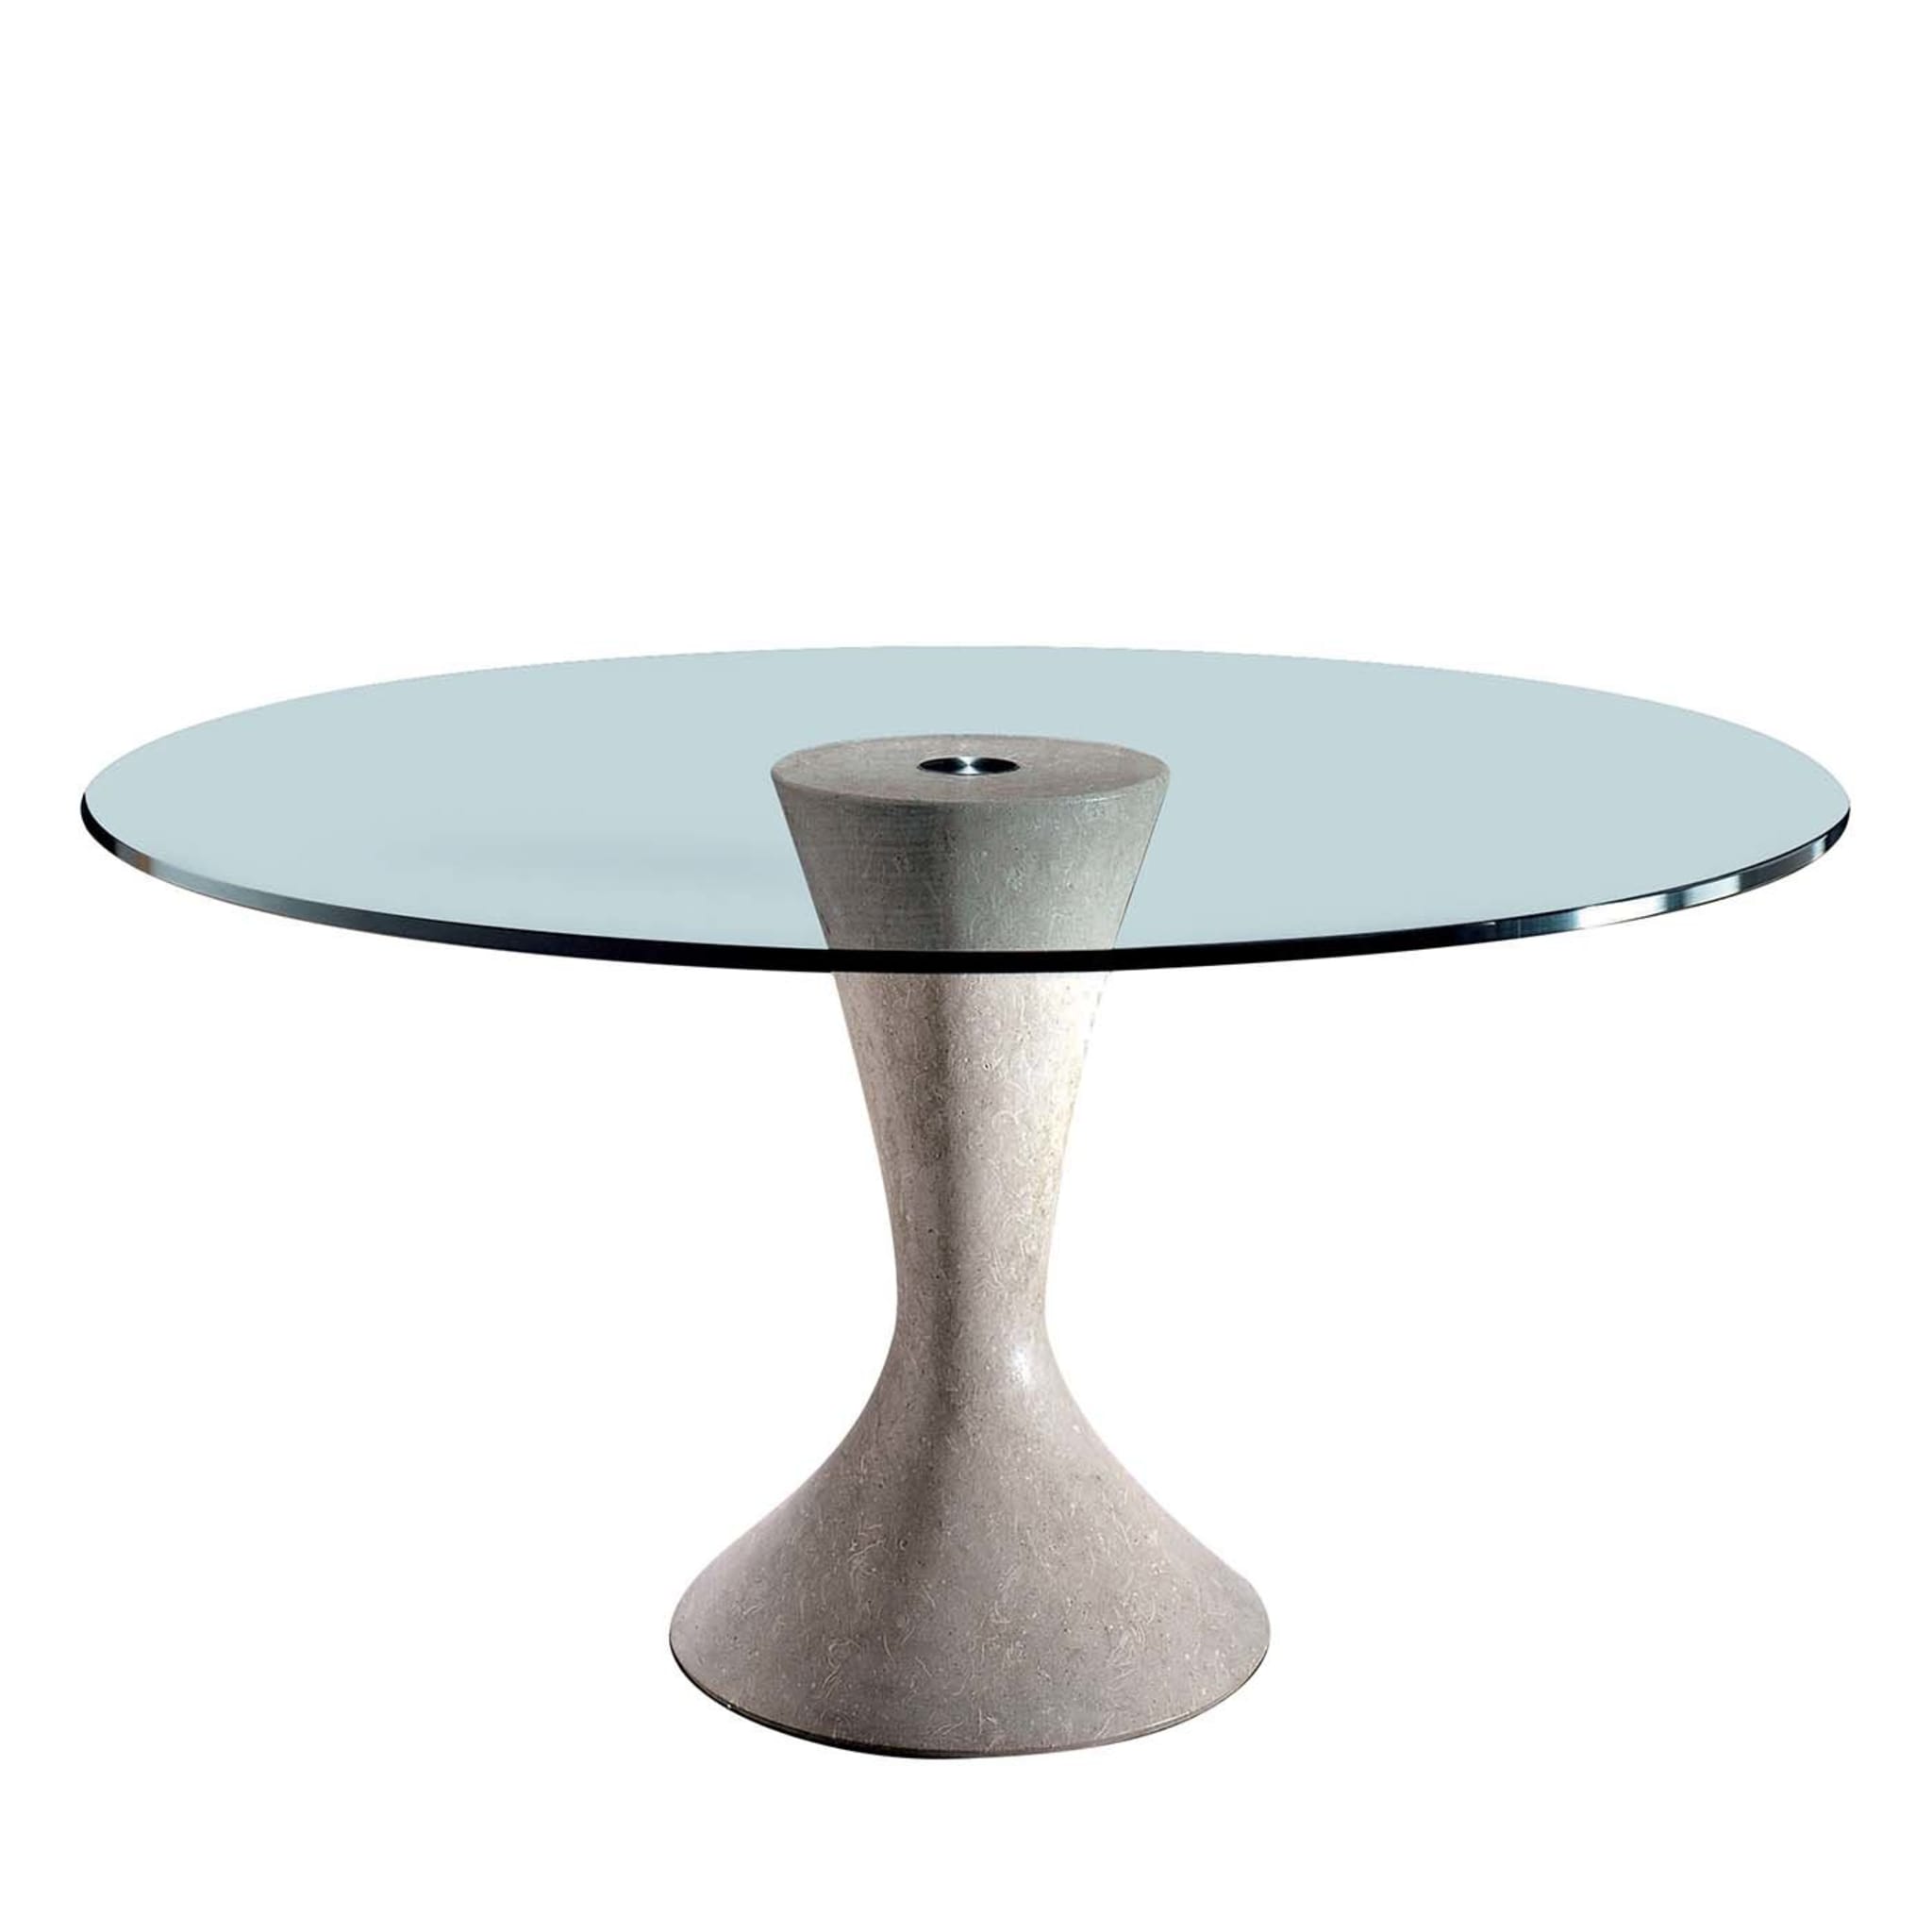 Tizia Table by Silvia Sandini - Main view